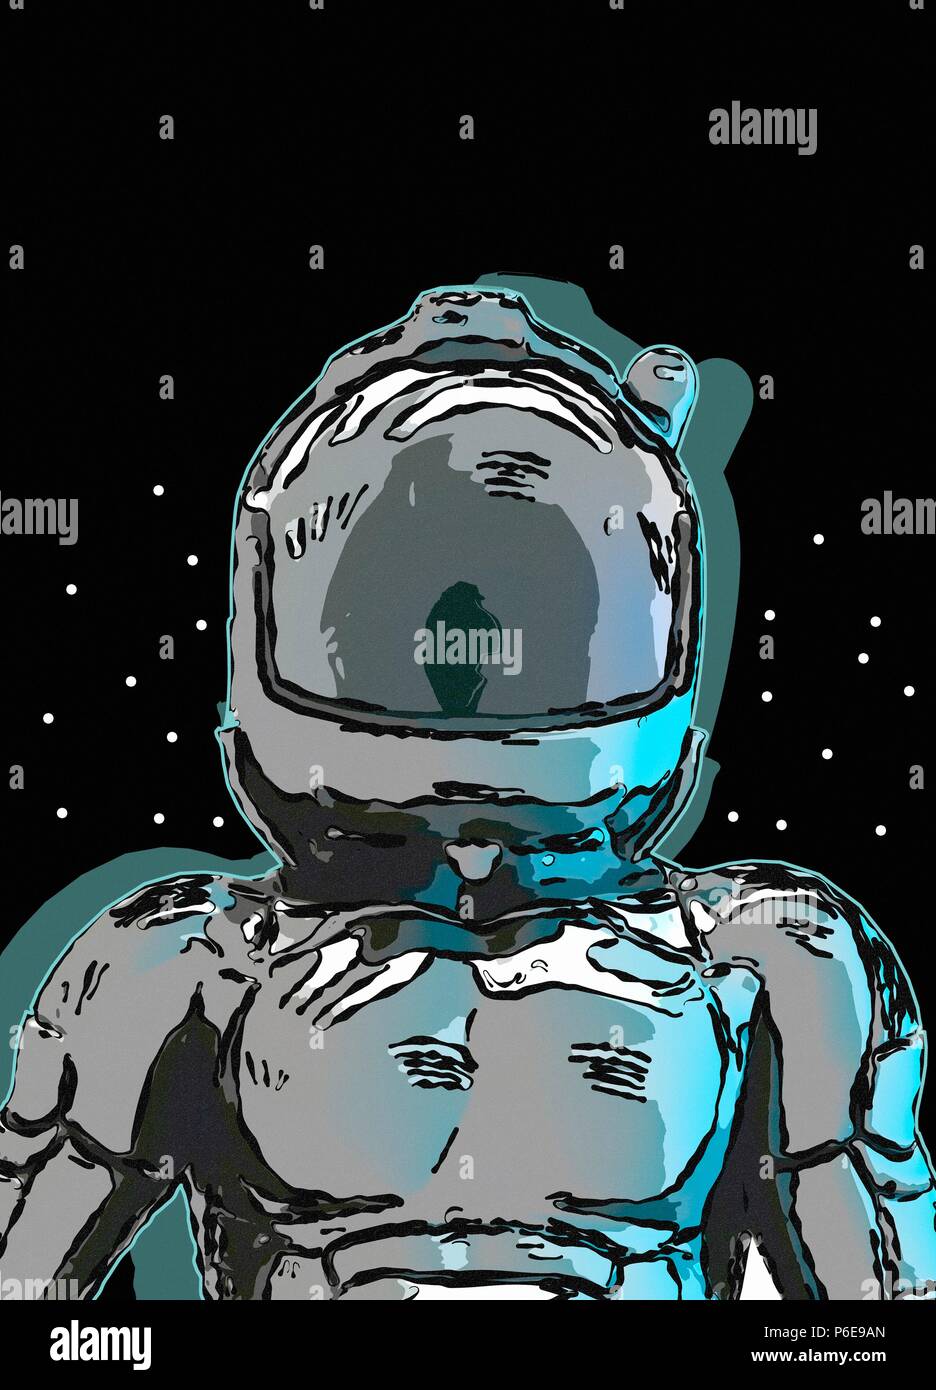 Casco de astronauta en el espacio con estilo de dibujo o dibujo a